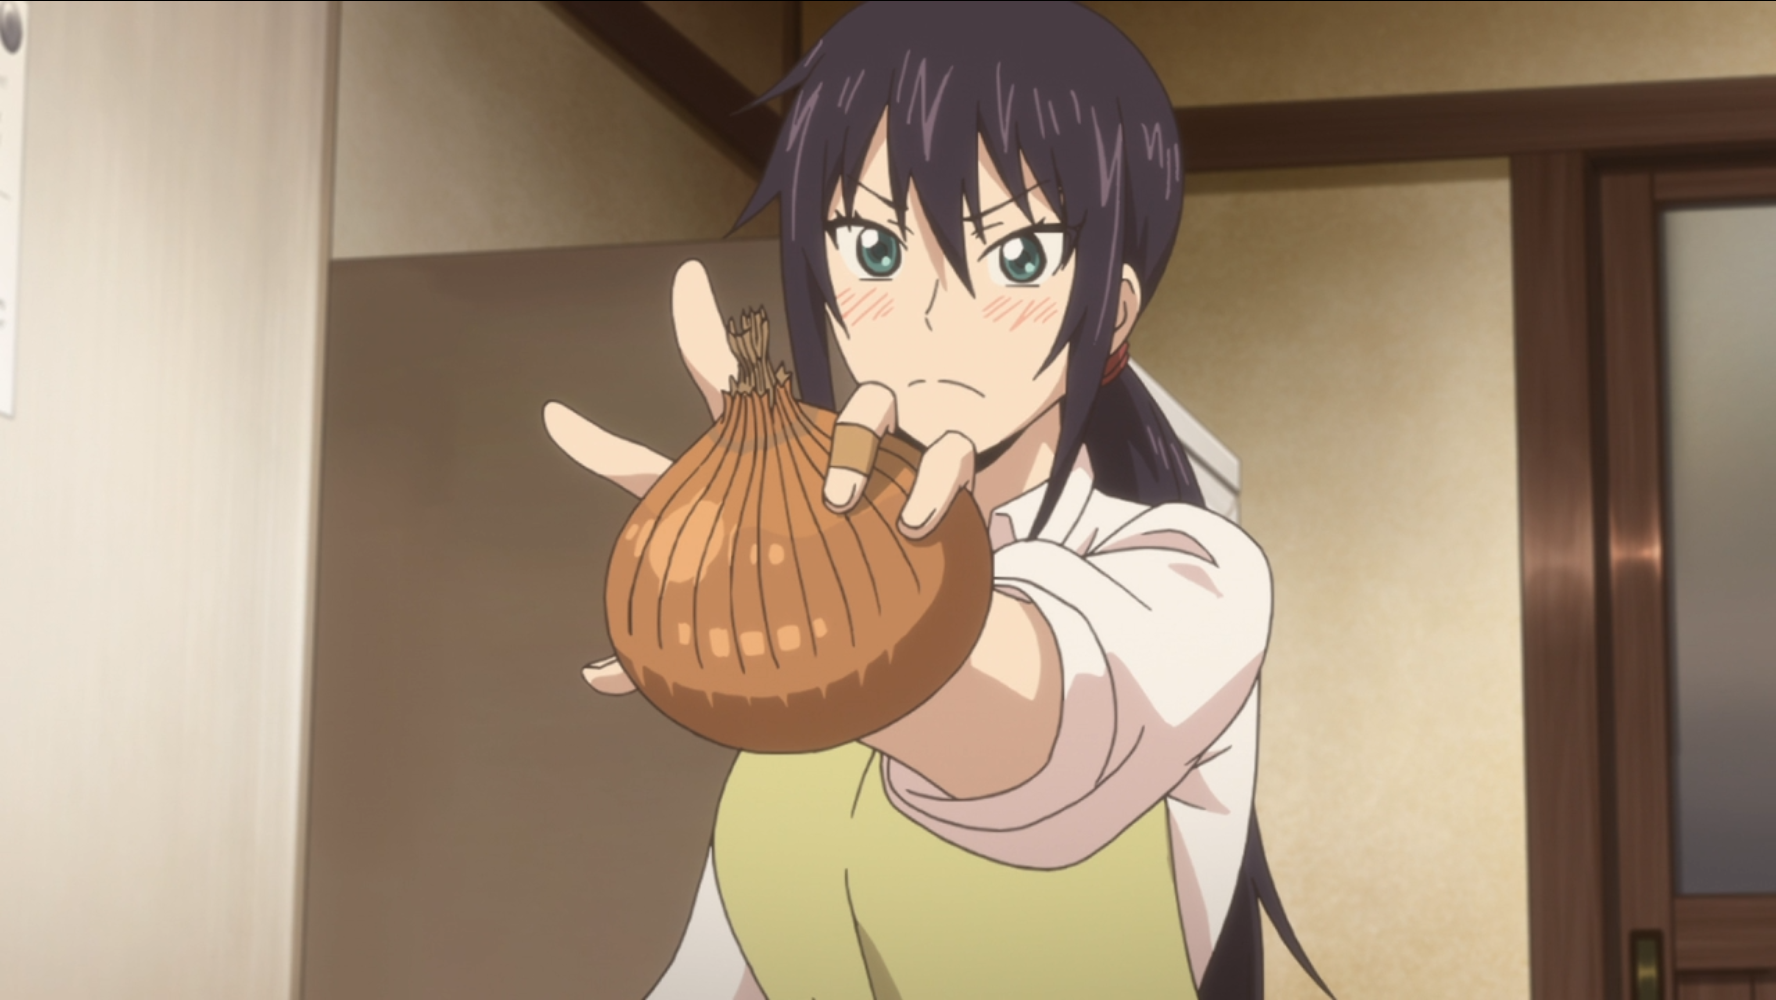 Kotori Iida schwenkt mit ihren verbundenen Fingern, die auf ihre früheren erfolglosen Kochversuche hinweisen, eine große rohe Zwiebel in einer Szene aus dem TV-Anime Sweetness & Lightning 2016.